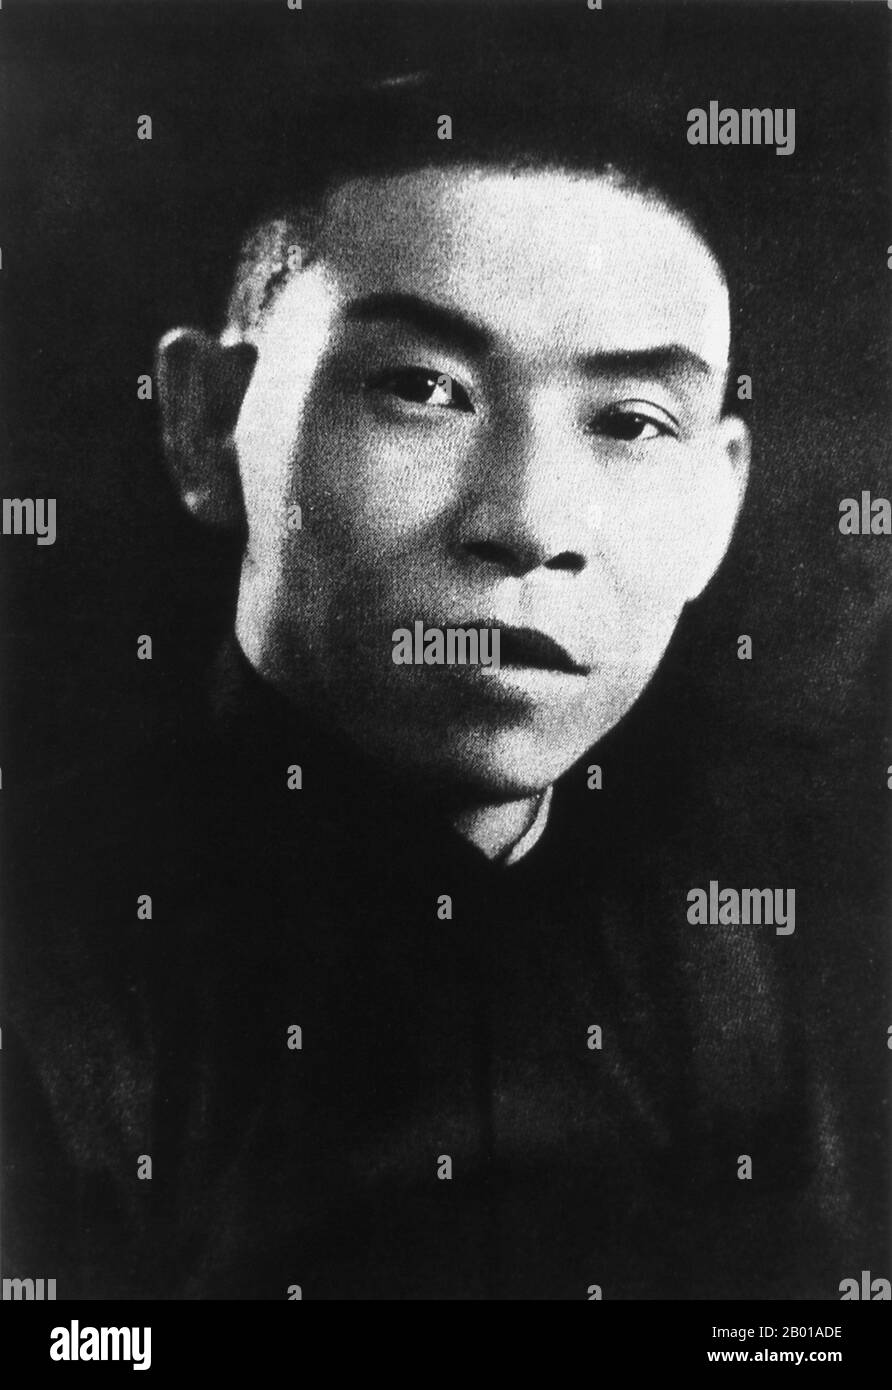 China: Du Yuesheng, mobster de la Gang Verde y padrino de Shanghai (22 de agosto de 1887 - 16 de agosto de 1951) como un joven, c. 1935. Du Yuesheng (Tu Yüeh-sheng), comúnmente conocido como 'Big-Ears Du', fue un gángster chino que pasó gran parte de su vida en Shanghai. Fue un partidario clave del Kuomintang (KMT; también conocido como Nacionalistas) y Chiang Kai-shek en su batalla contra los comunistas durante la década de 1920s, y fue una figura de cierta importancia durante la Segunda Guerra Sino-Japonesa. Después de la Guerra Civil China y la retirada del KMT a Taiwán, Du se exilió en Hong Kong y permaneció allí hasta su muerte en 1951. Foto de stock